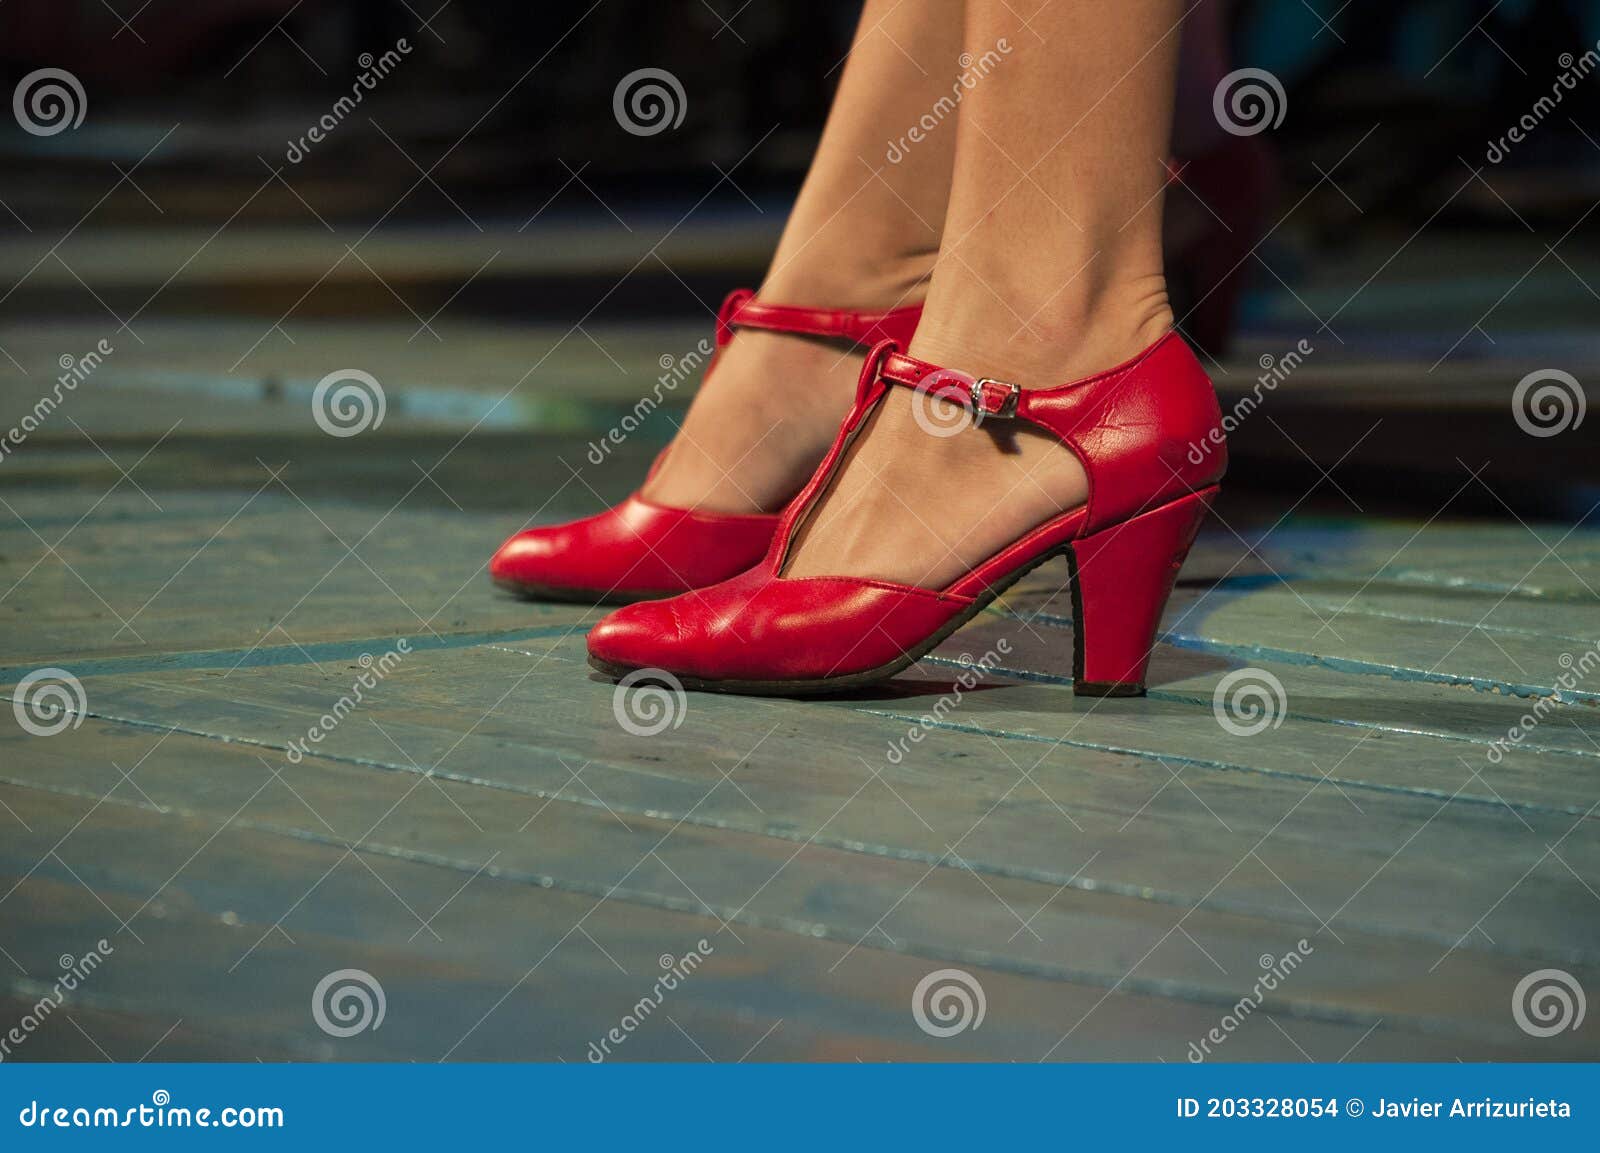 https://thumbs.dreamstime.com/z/acercamiento-de-unas-zapatillas-baile-flamenco-rojo-en-las-piernas-una-mujer-un-escenario-madera-sobre-bailar%C3%ADn-203328054.jpg